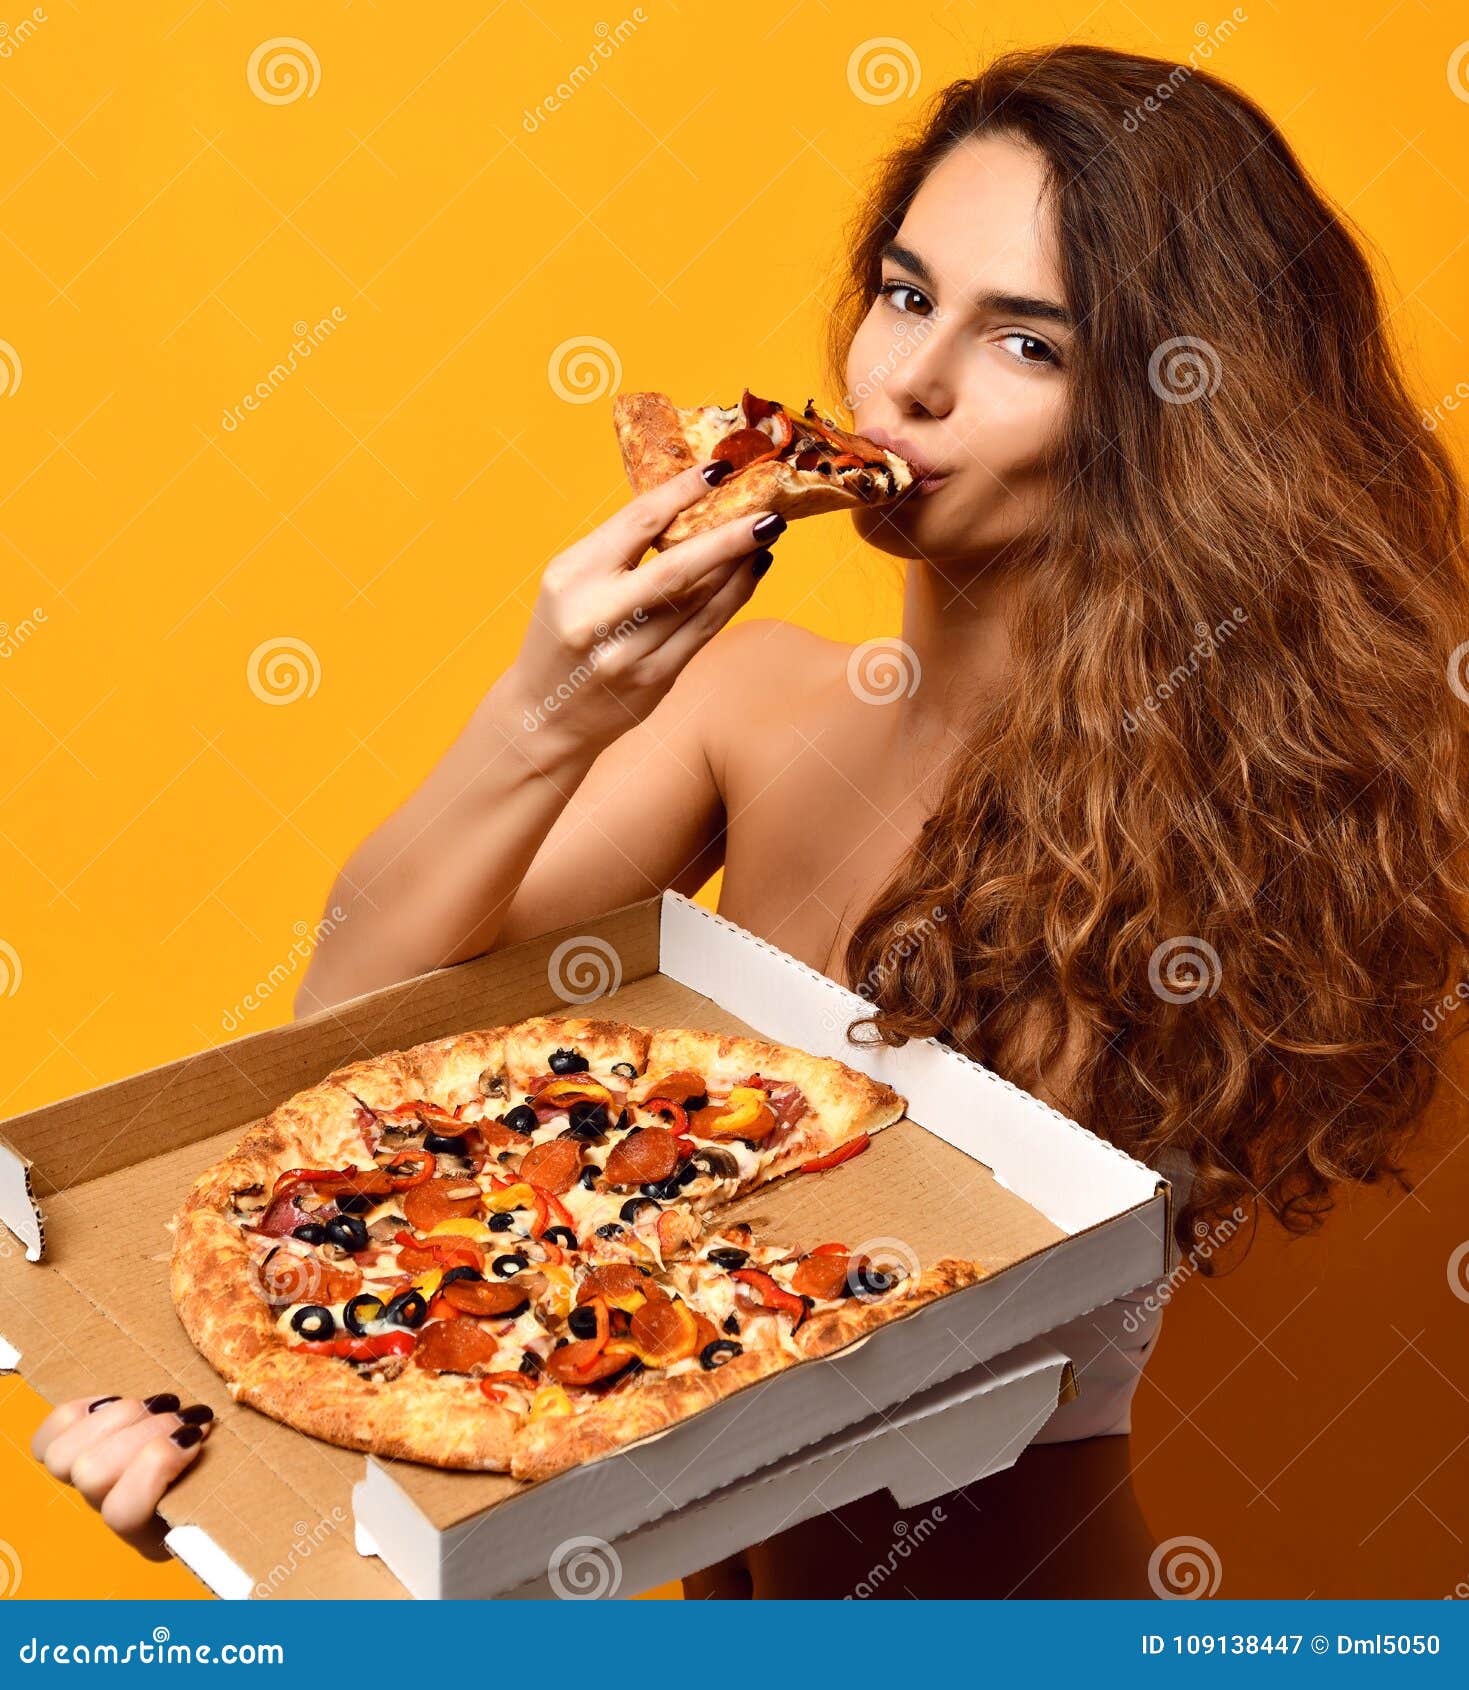 фотошоп из пиццы девушка фото 20